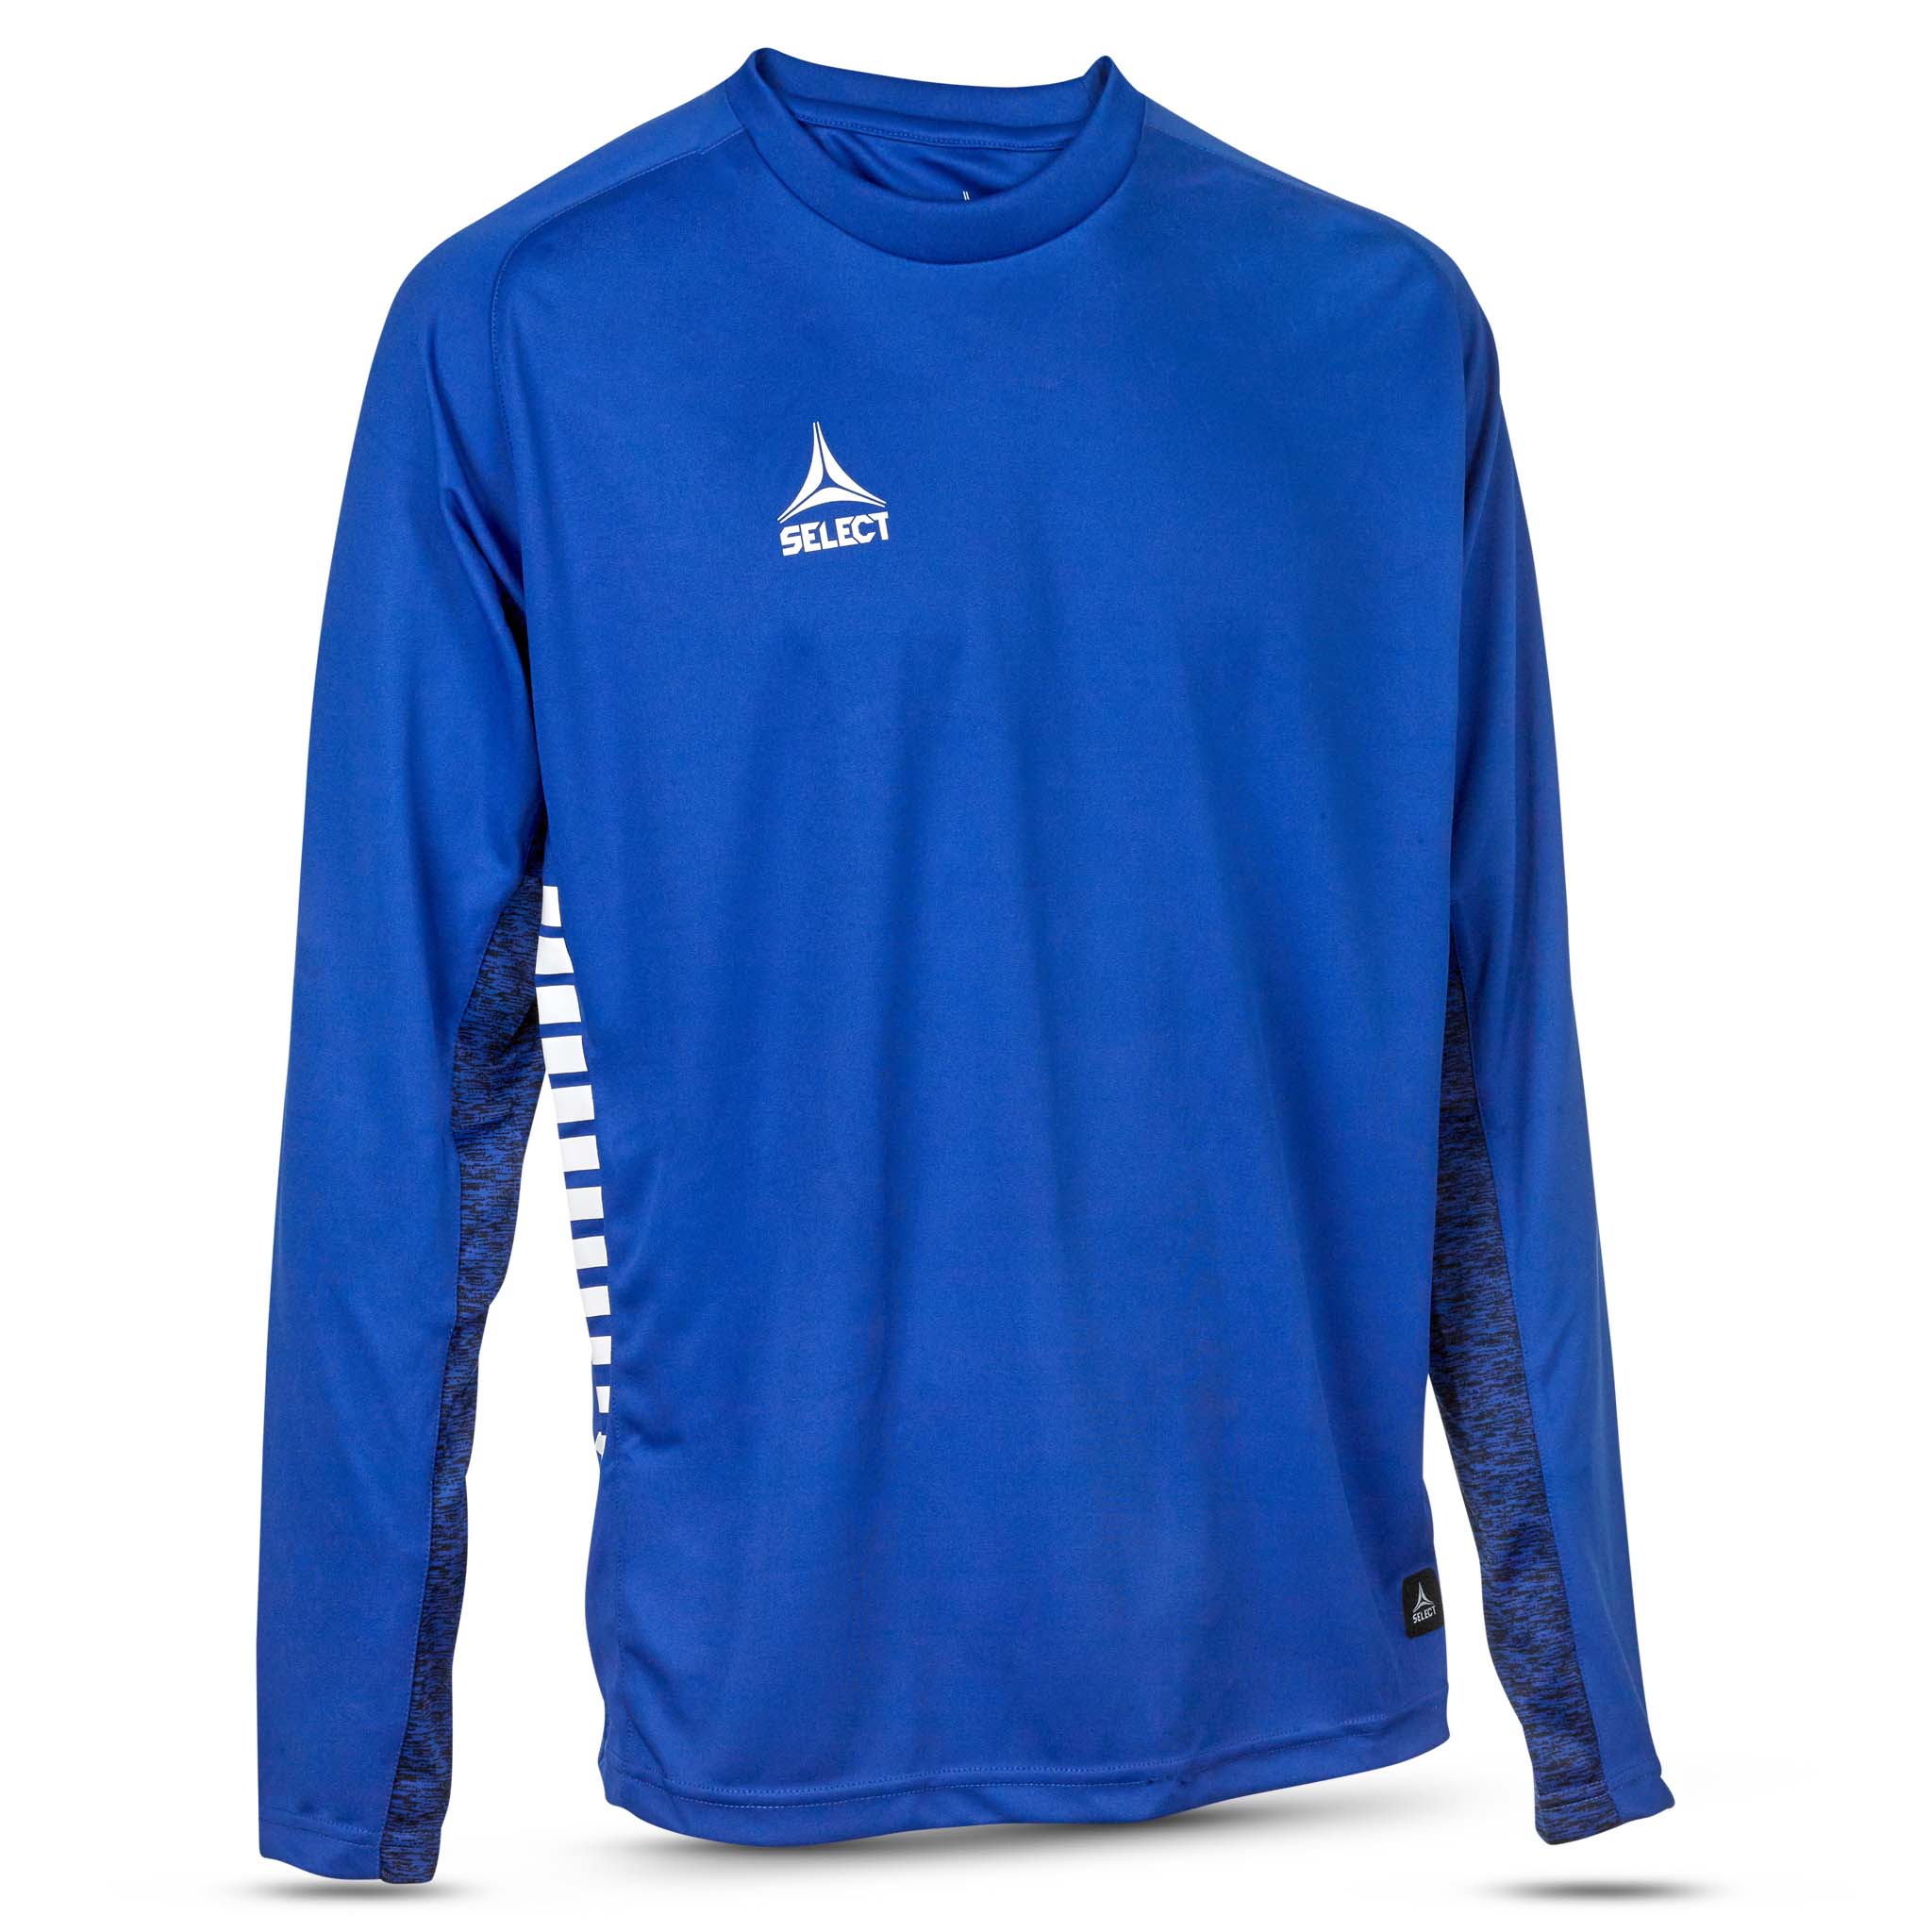 Spain Træningssweatshirt - Børn #farve_blå